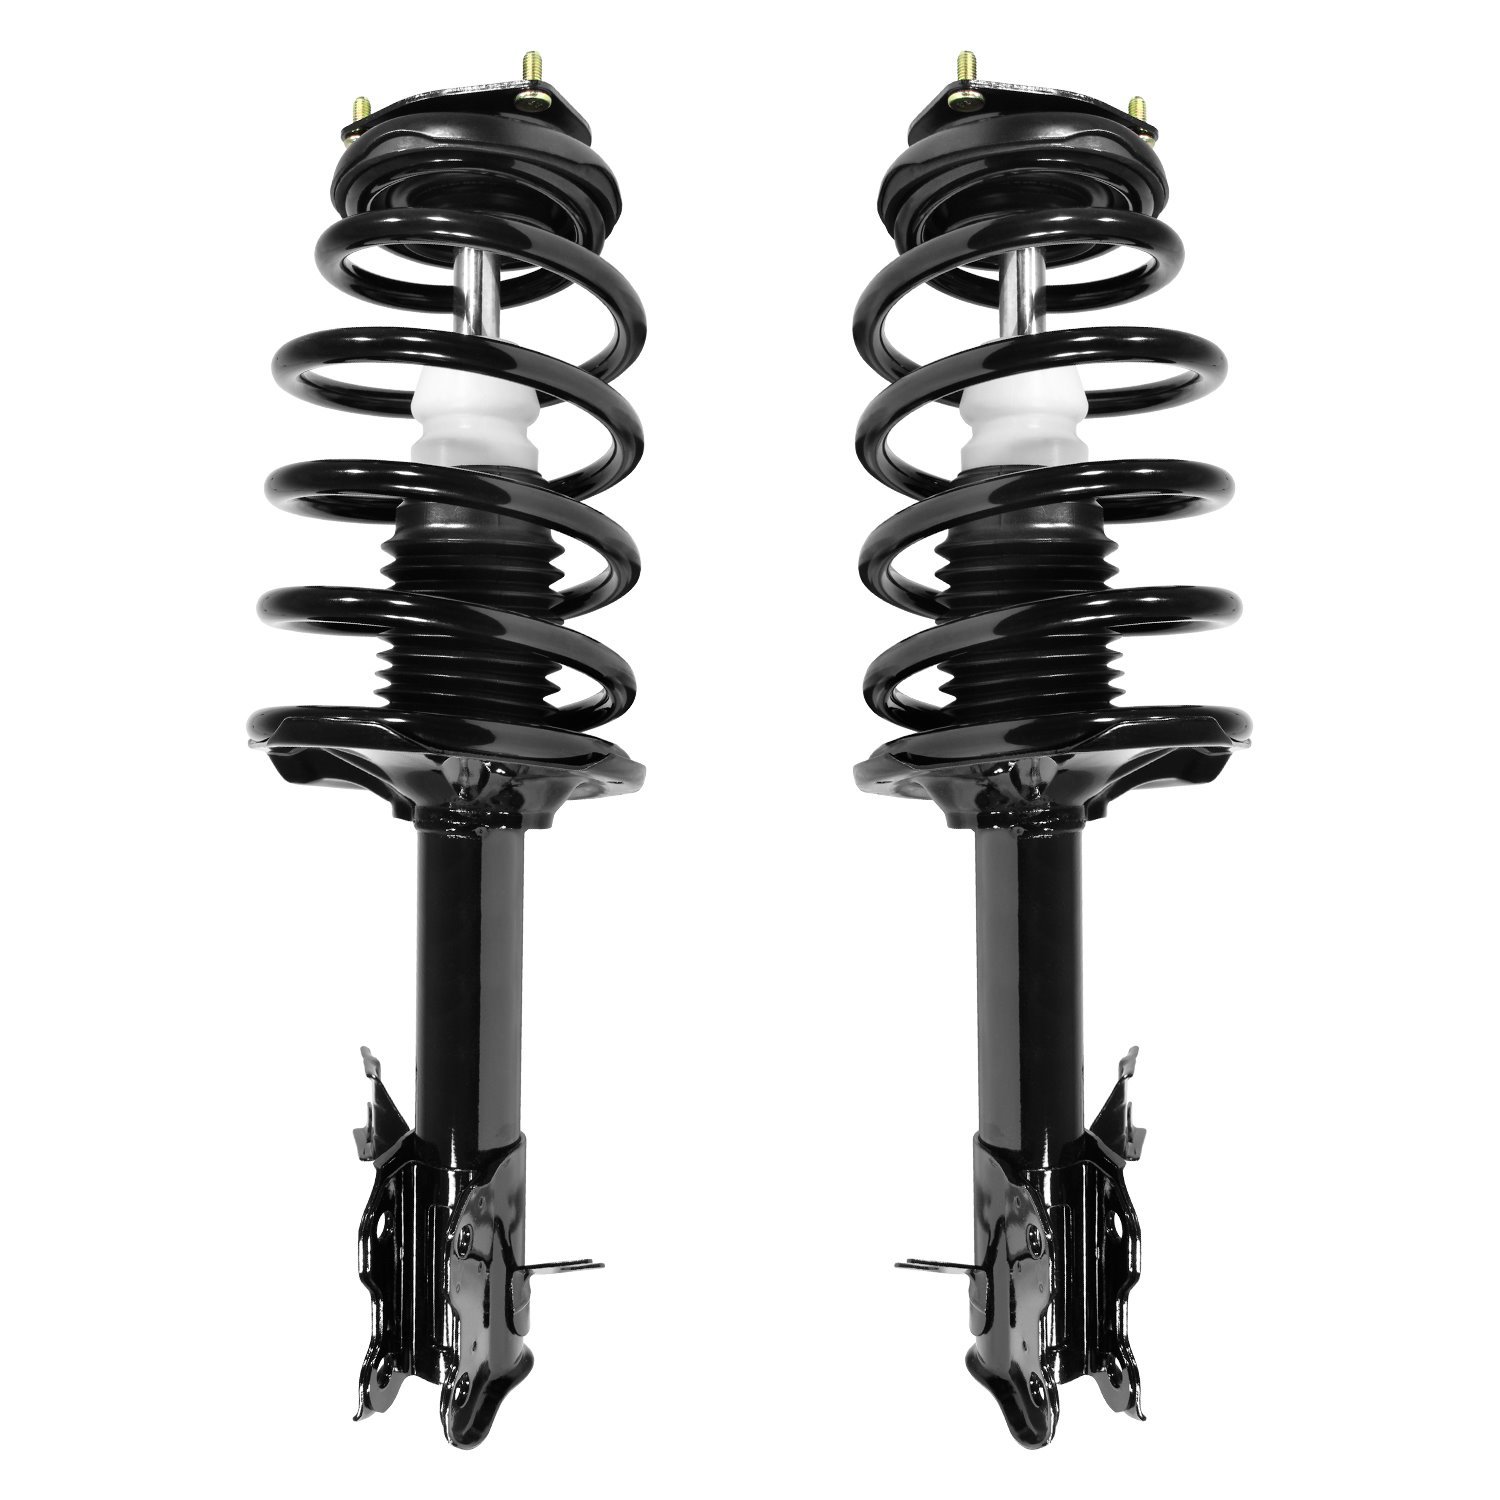 2-11571-11572-001 Suspension Strut & Coil Spring Assembly Set Fits Select Nissan Sentra